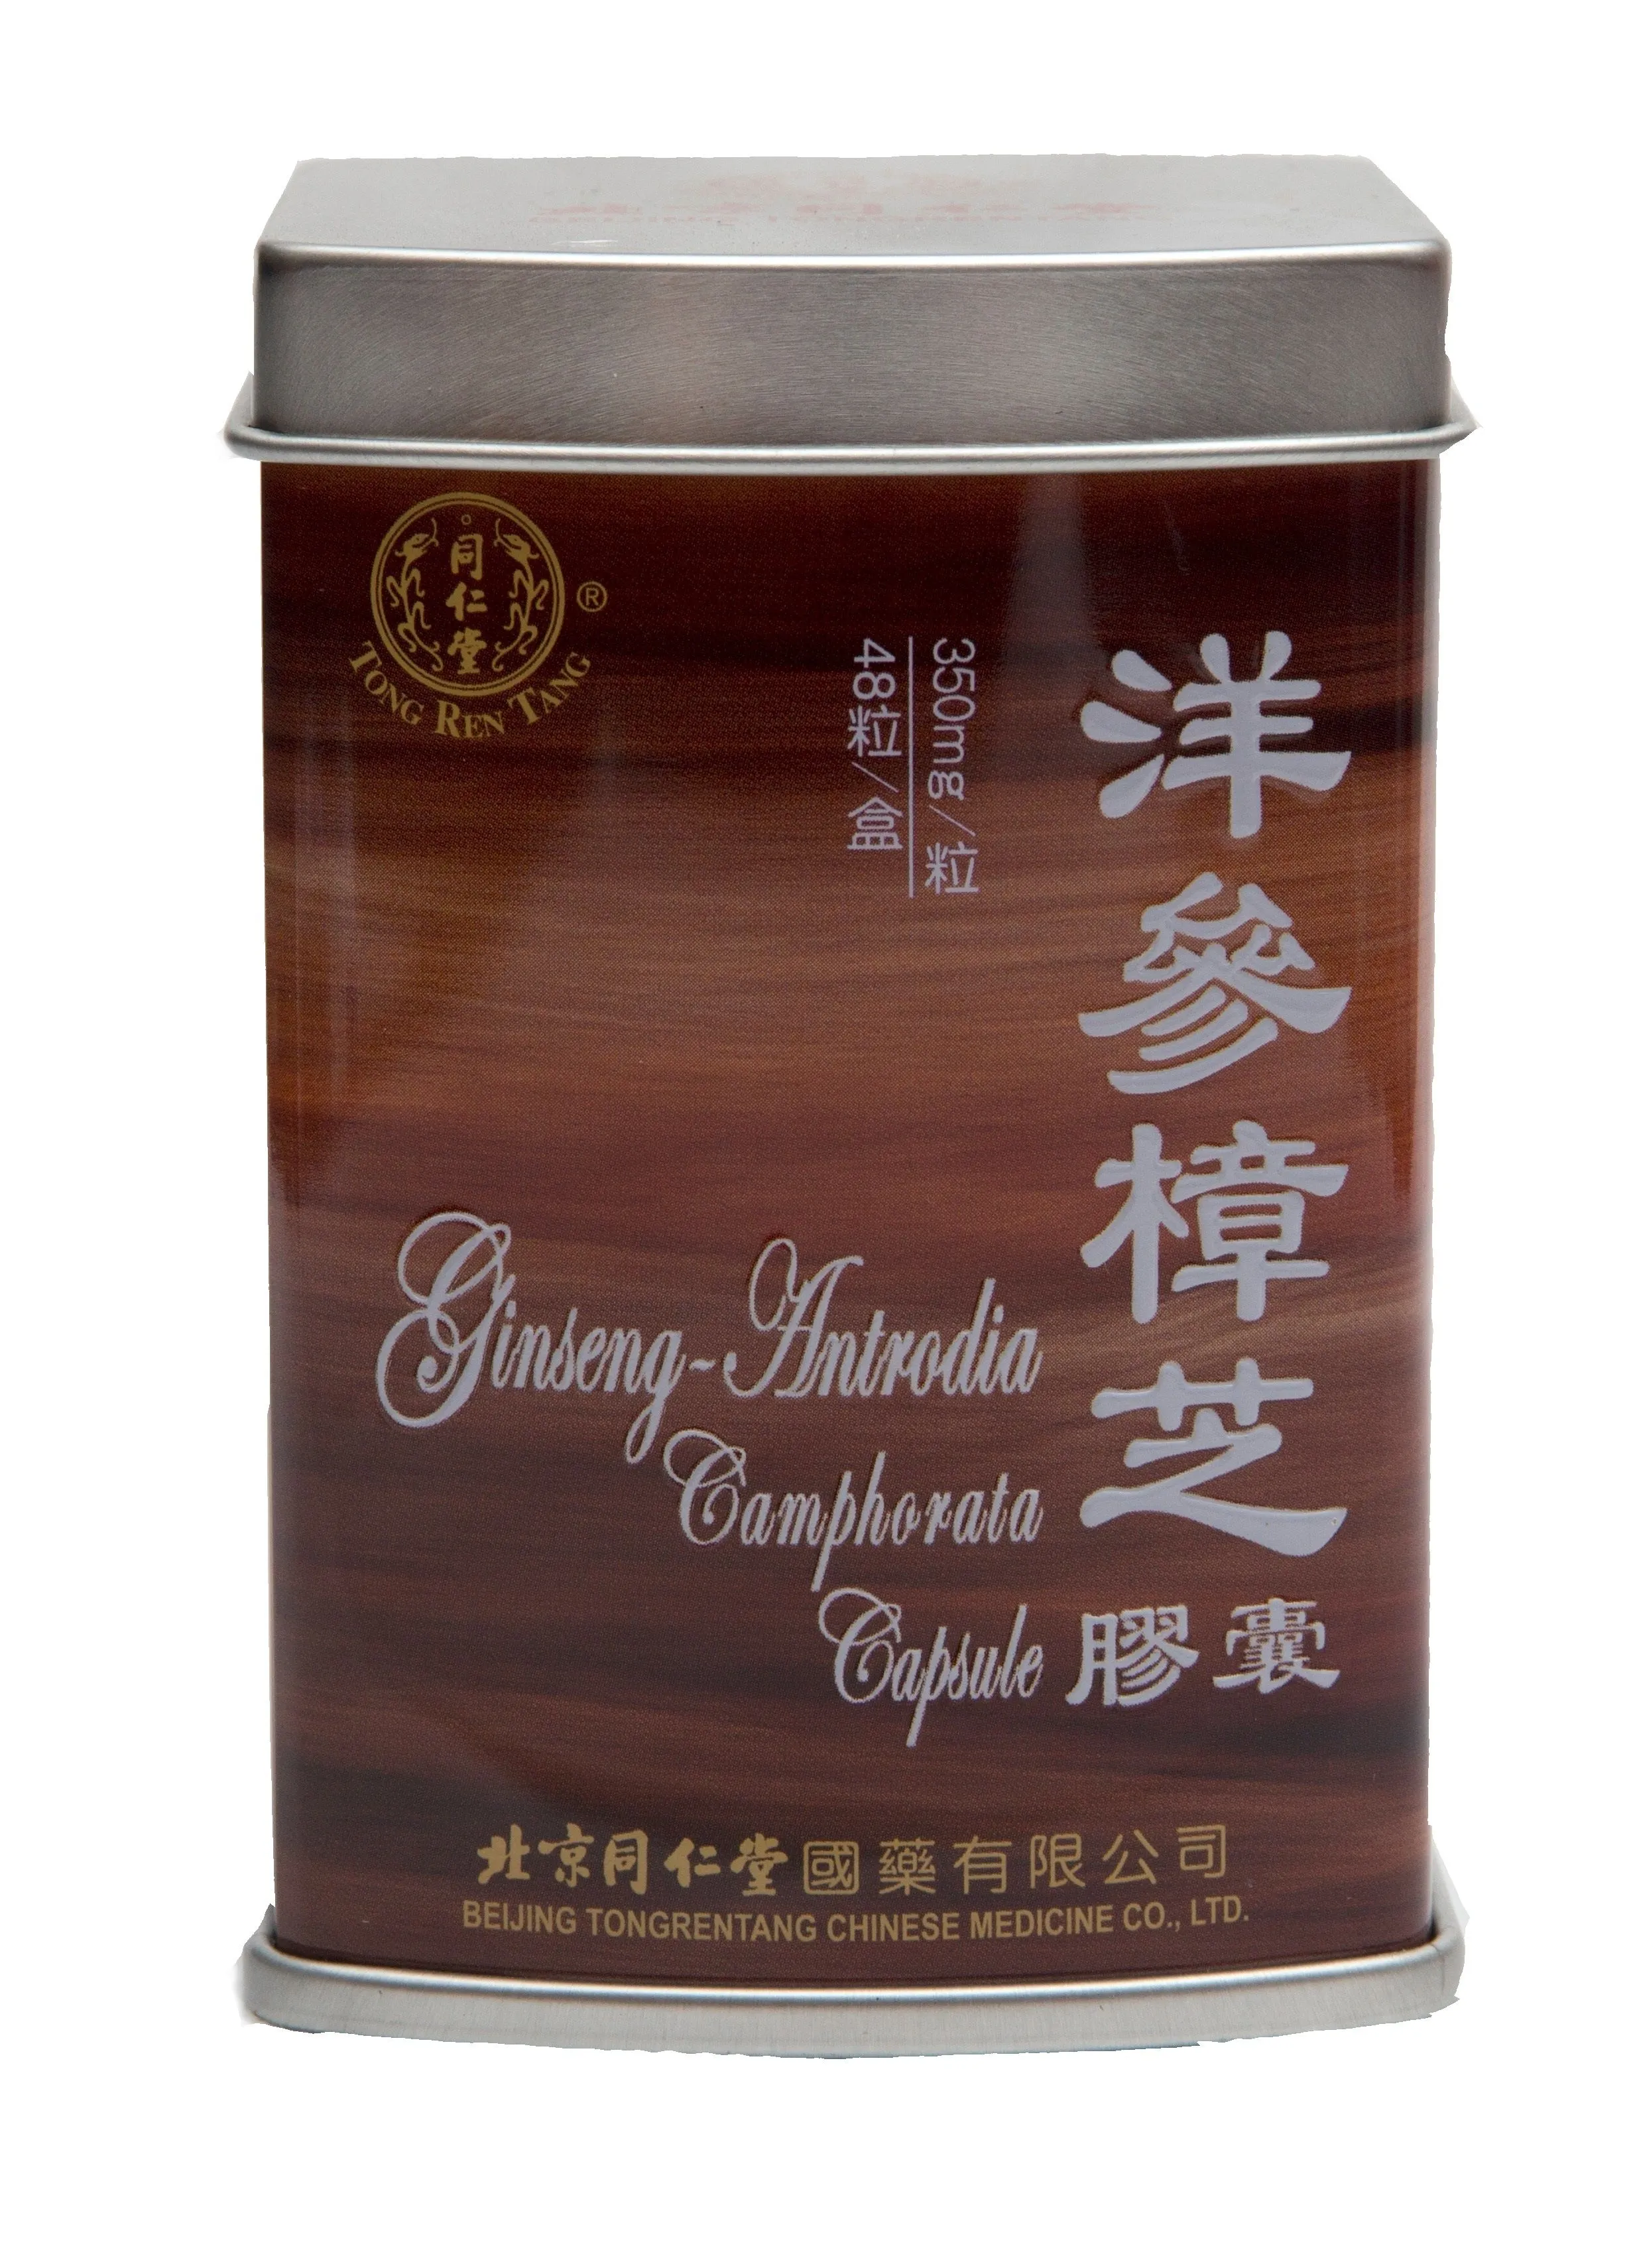 Ginseng - Antrodia Camphorata Capsule doplněk stravy 洋参樟芝胶囊 48 kapslí